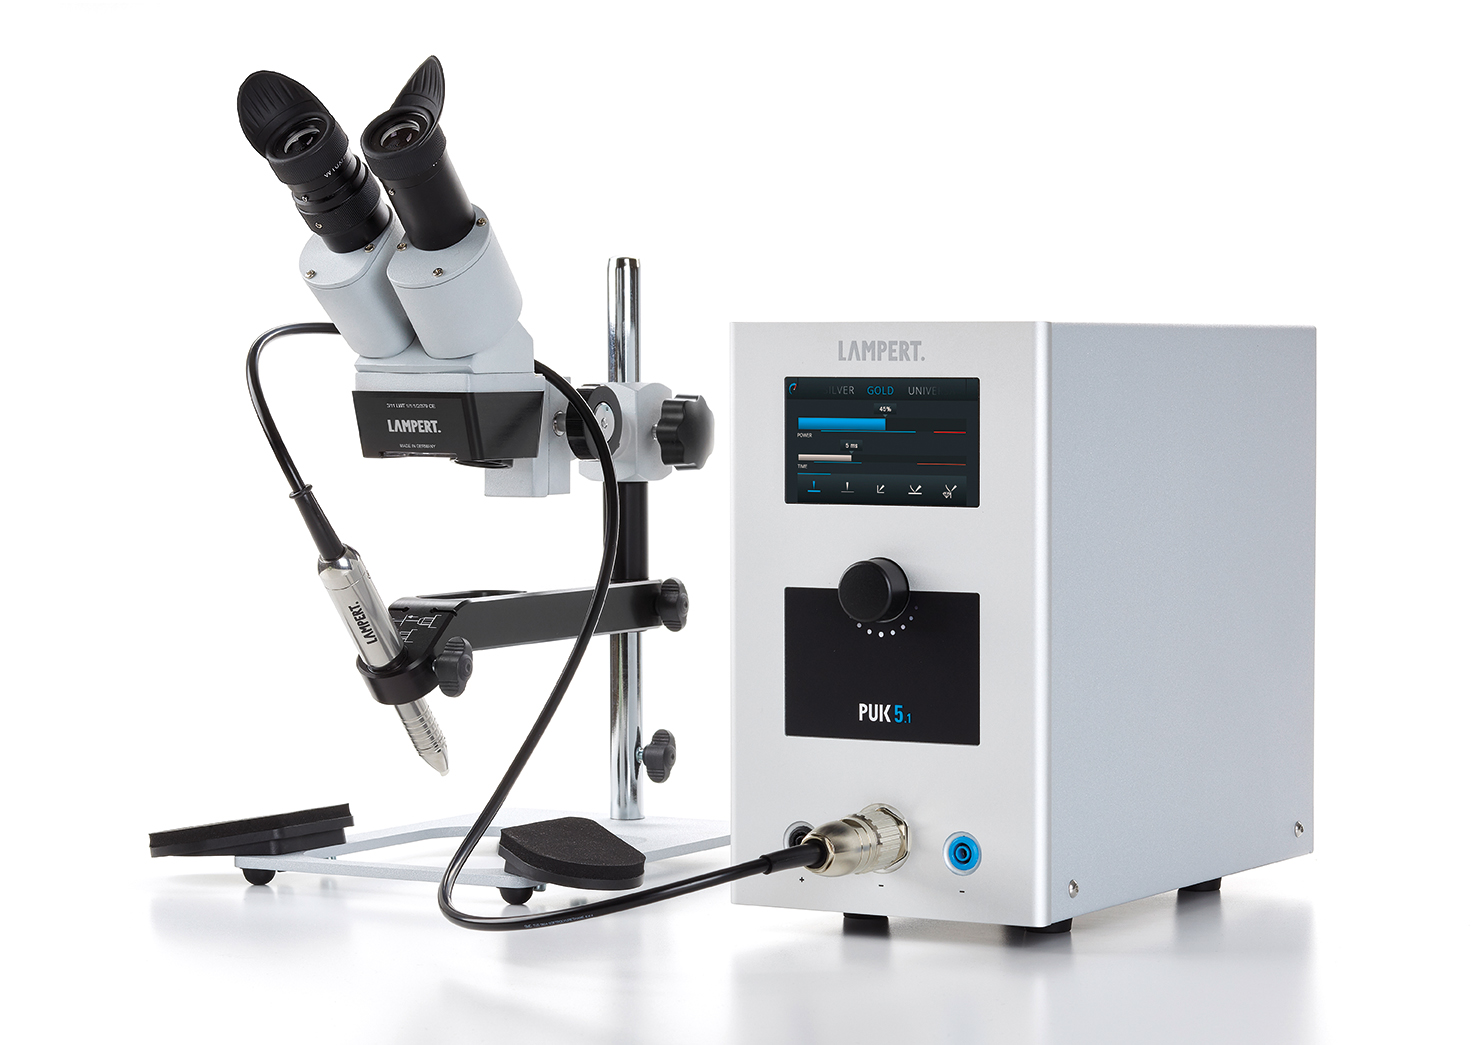 Punktschweißgerät PUK 5.1 mit Schweißmikroskop SM5